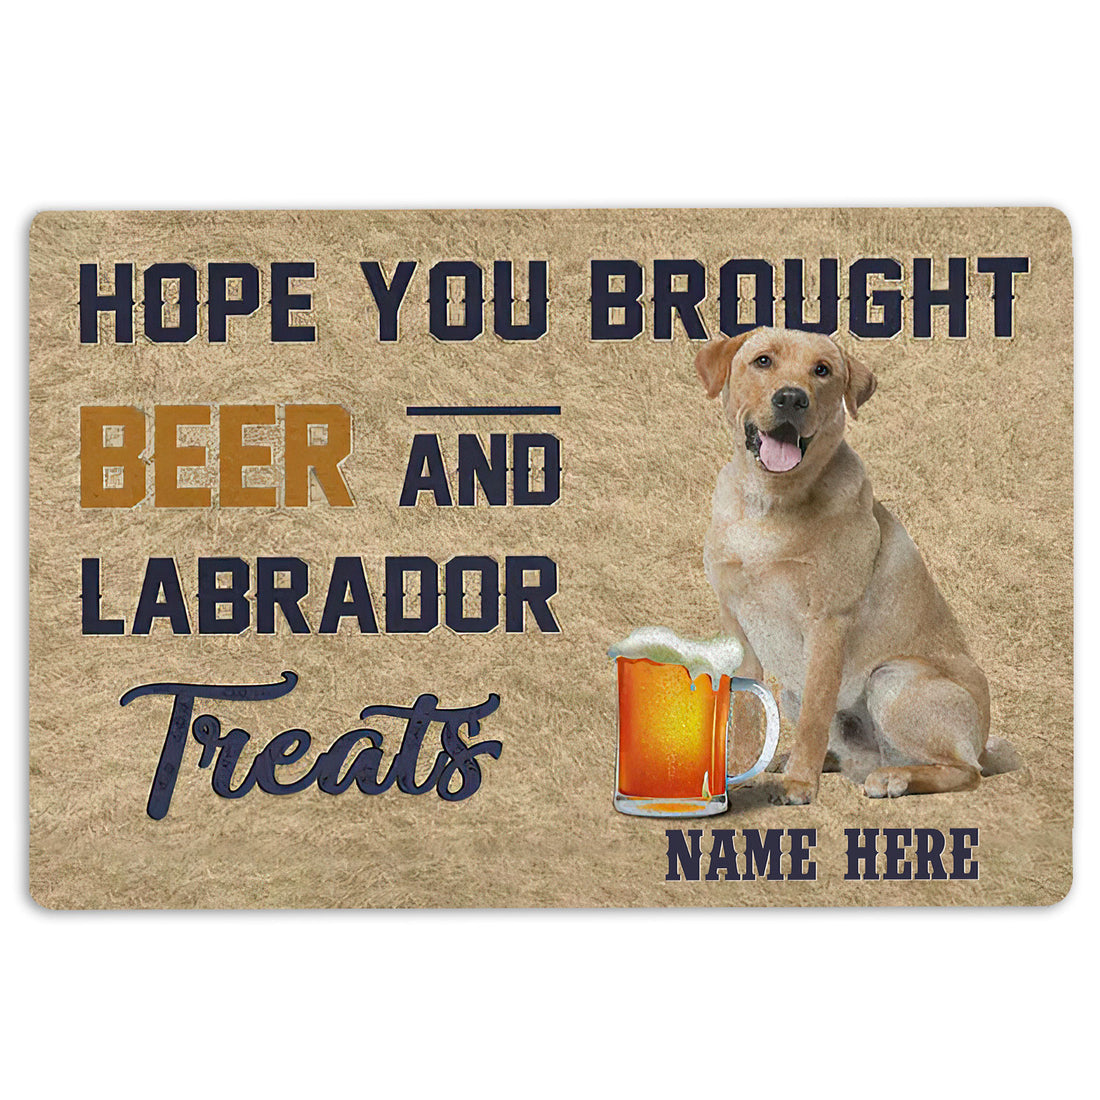 Ohaprints-Doormat-Outdoor-Indoor-Brought-Beer-And-Labrador-Treat-Custom-Personalized-Name-Rubber-Door-Mat-1971-18'' x 30''